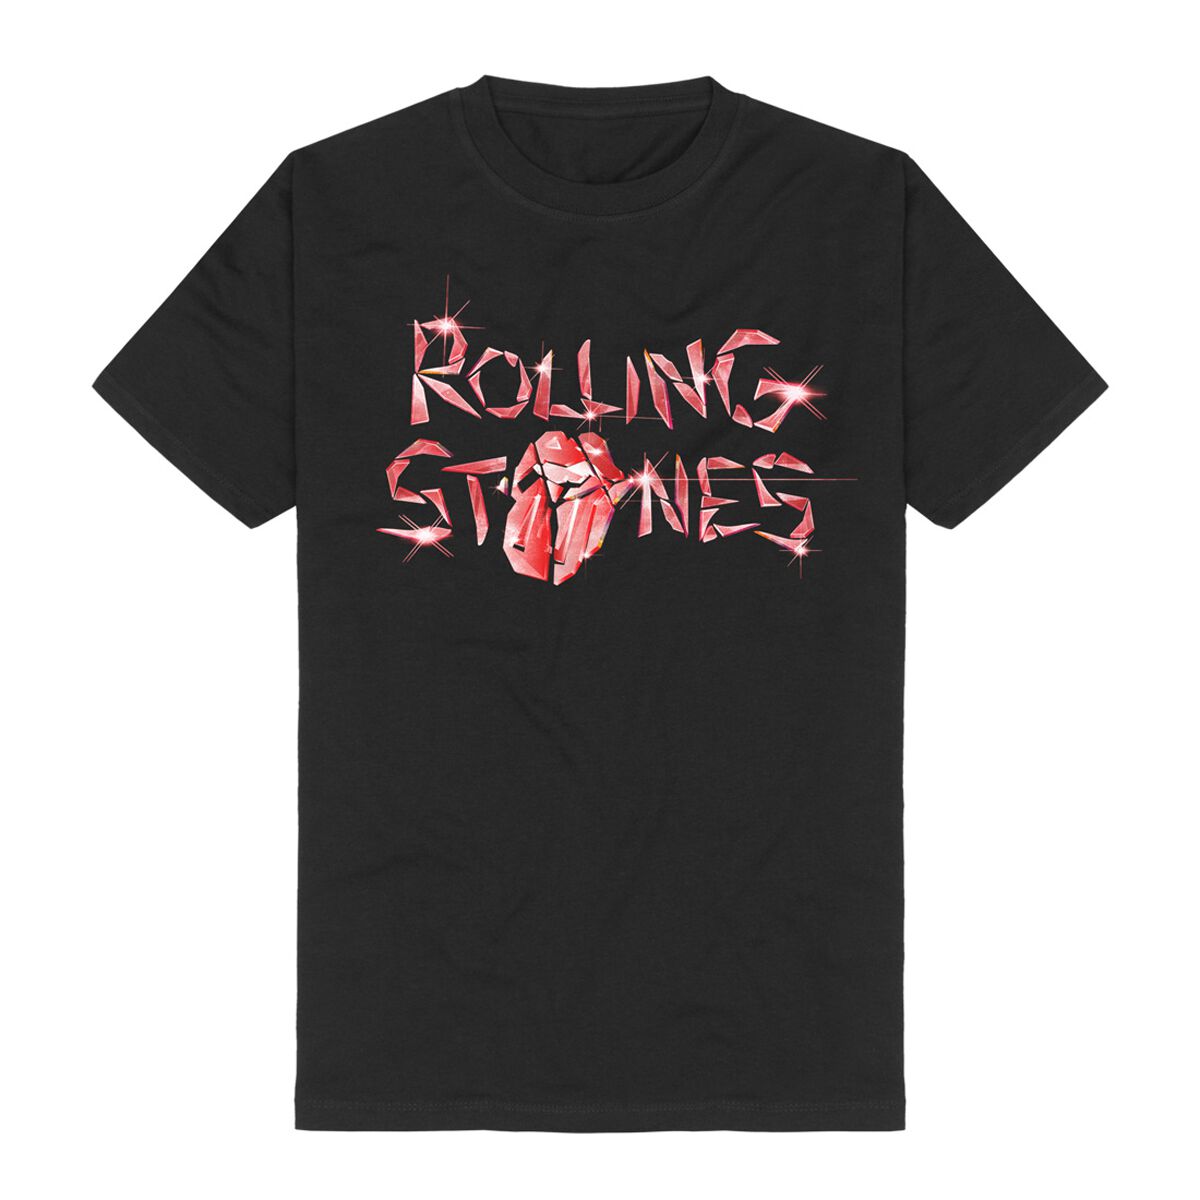 The Rolling Stones T-Shirt - Hackney Diamonds Glass Logo - S bis 5XL - für Männer - Größe L - schwarz  - Lizenziertes Merchandise!